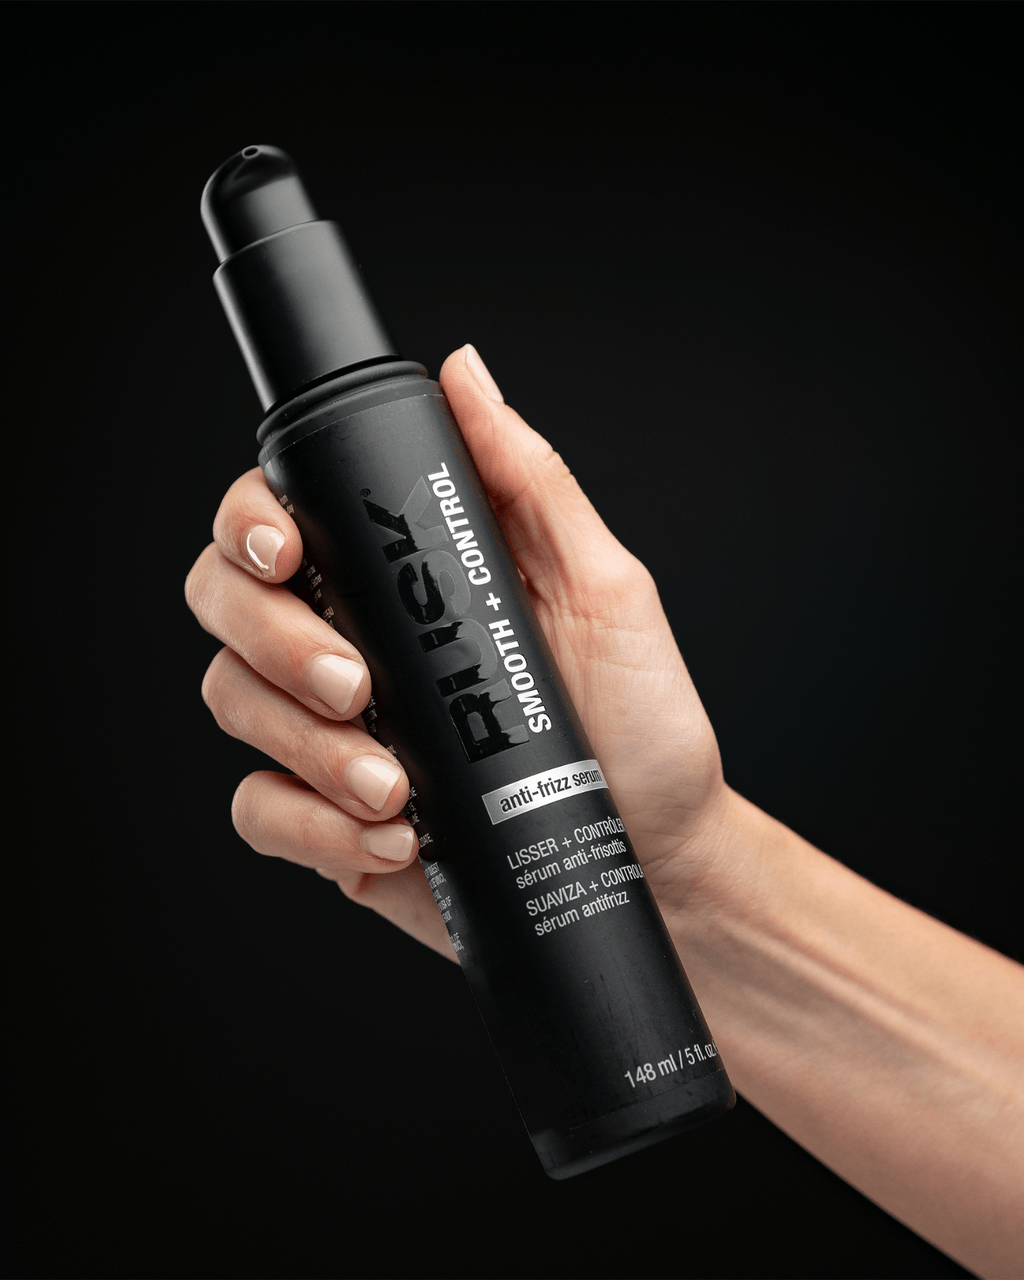 Humidity-Resistant Anti-Frizz Spray – RUSK